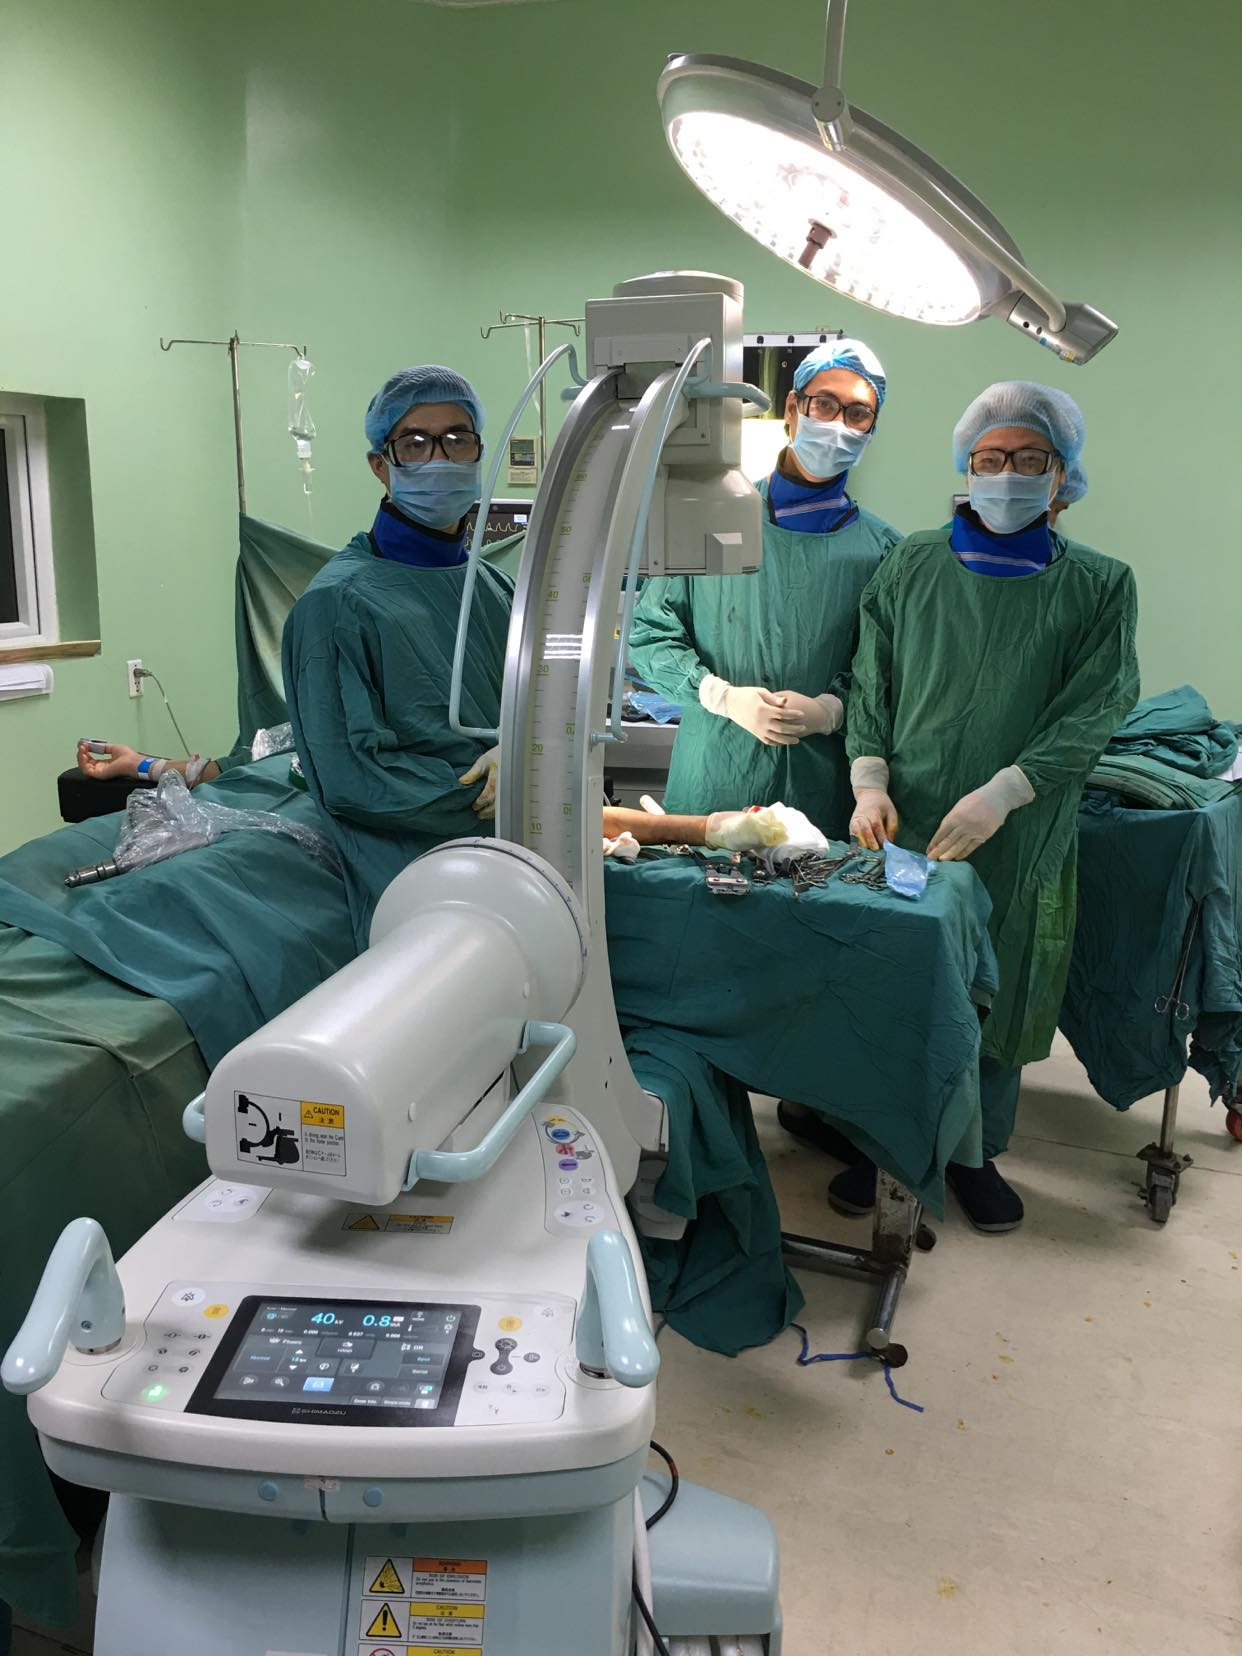 Các bác sĩ tại Bệnh viện Đa khoa Quảng Ngãi thực hiện phẫu thuật điều trị gãy kín xương cẳng tay cho bệnh nhân bằng phương pháp xuyên đinh kín trên màn hình tăng sáng của máy C - Arm